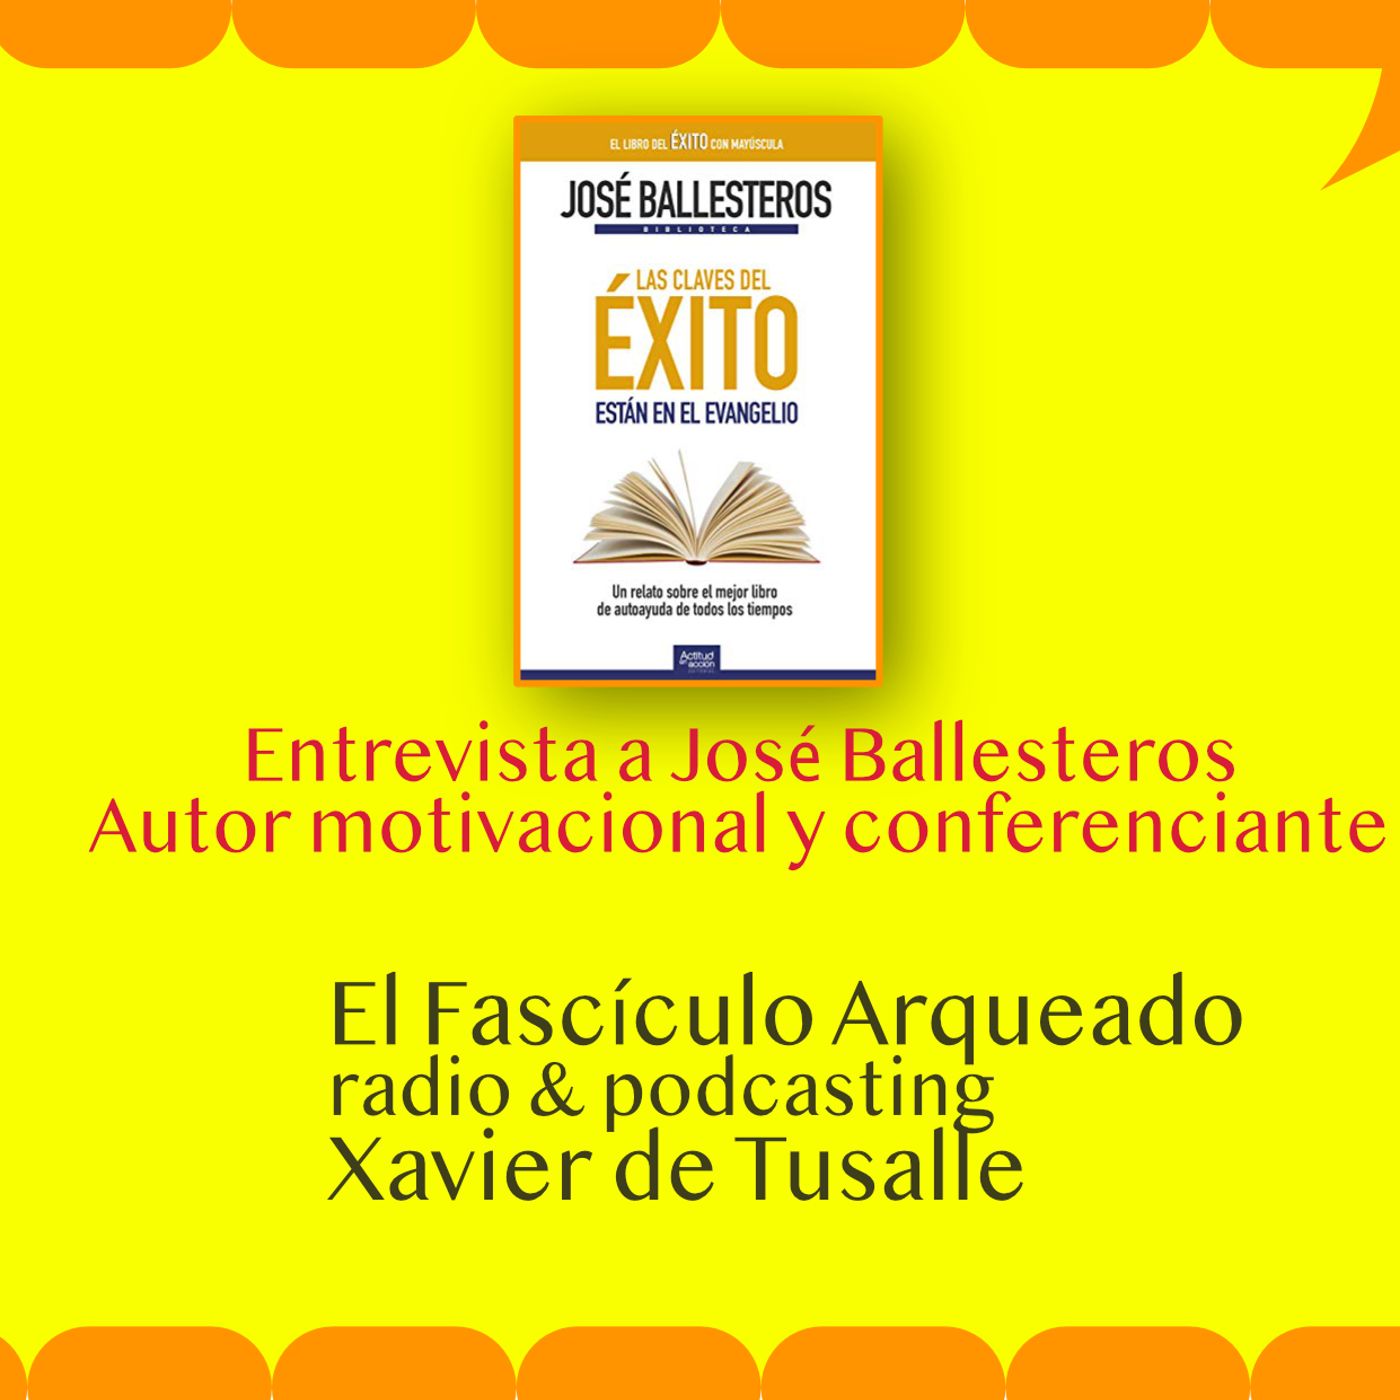 Entrevisto a José Ballesteros, escritor y gran motivador